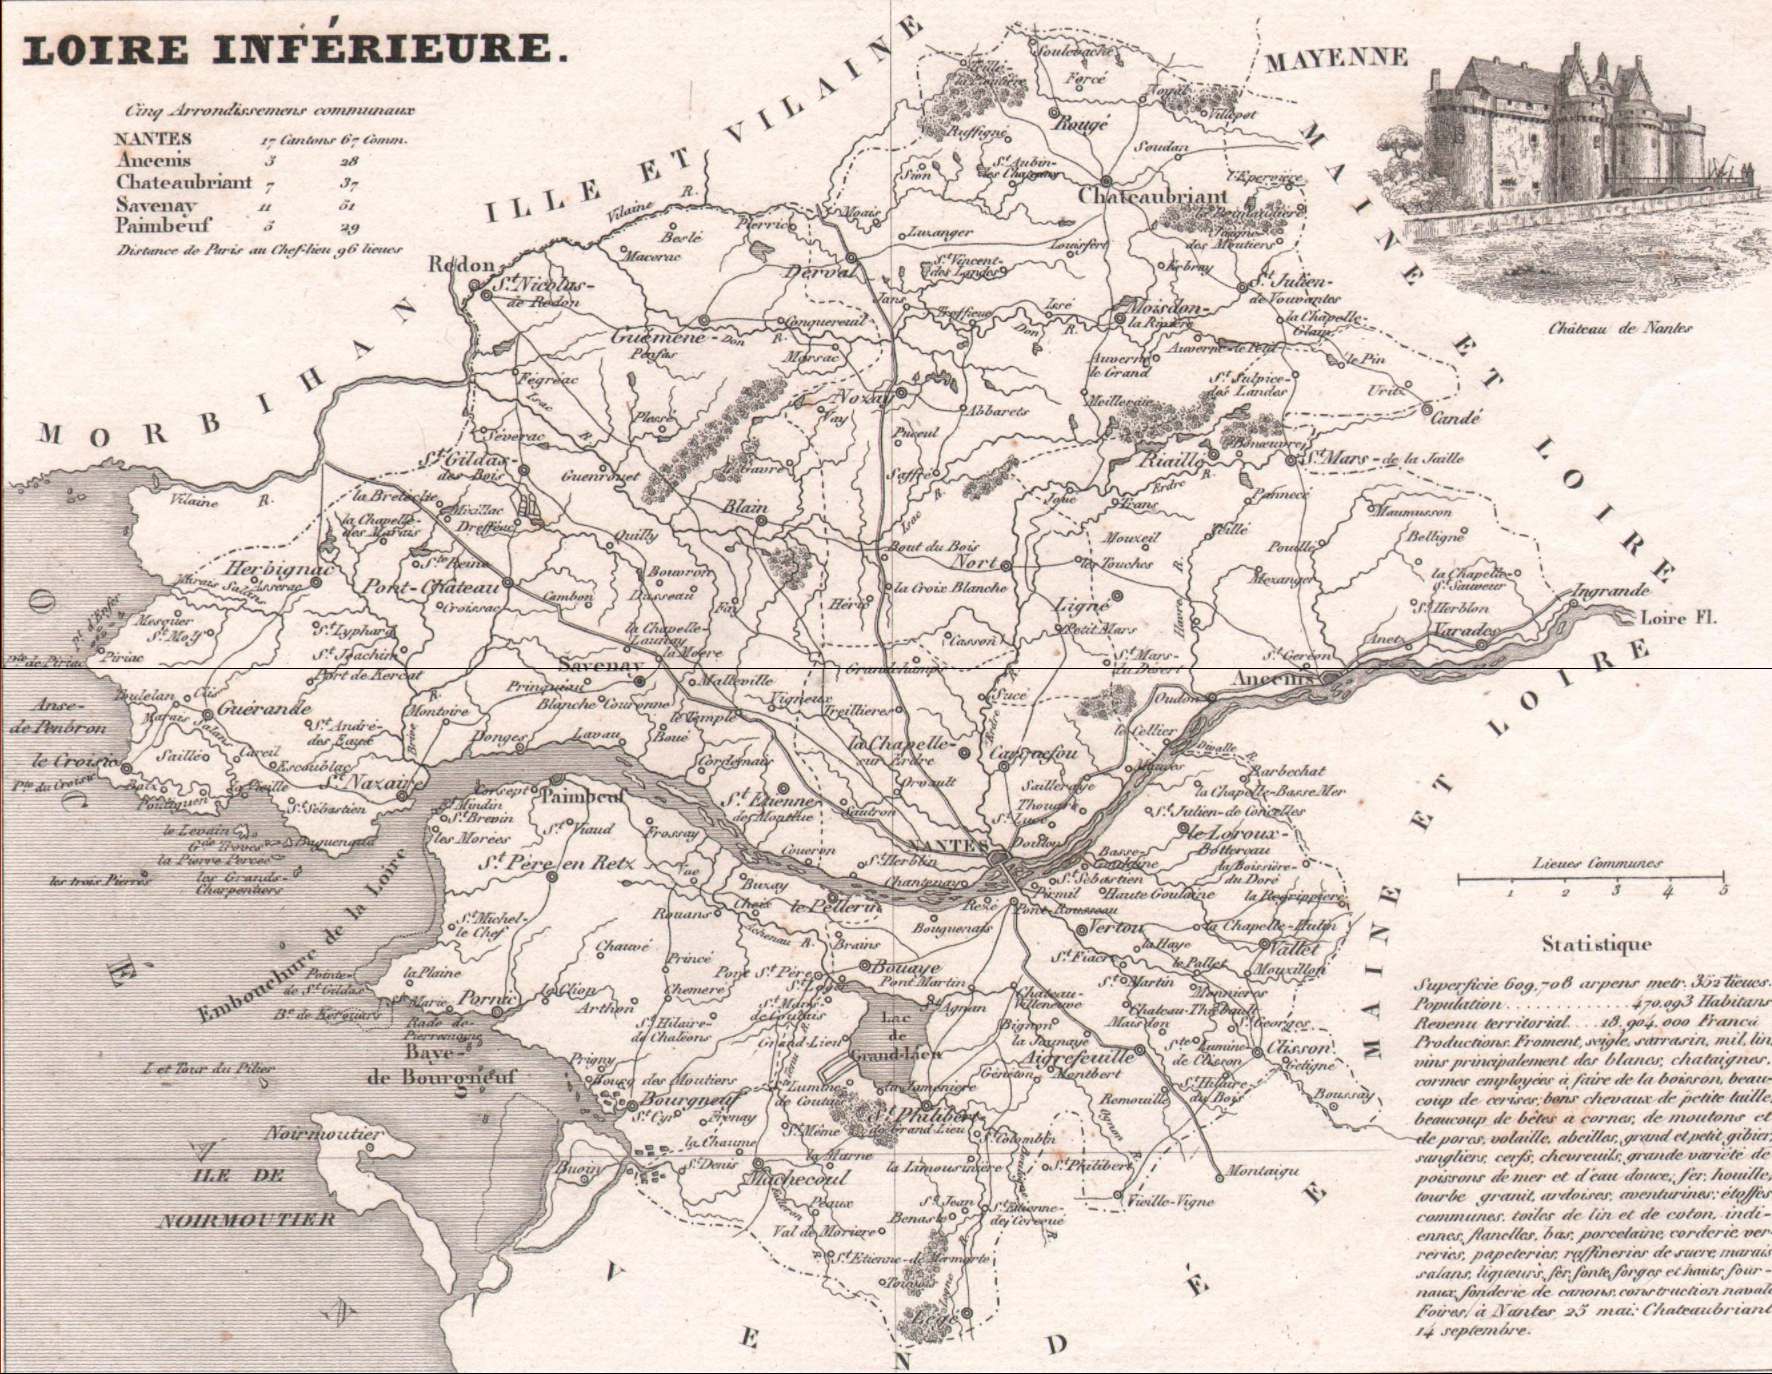 Carte de la Loire Inférieure en 1850